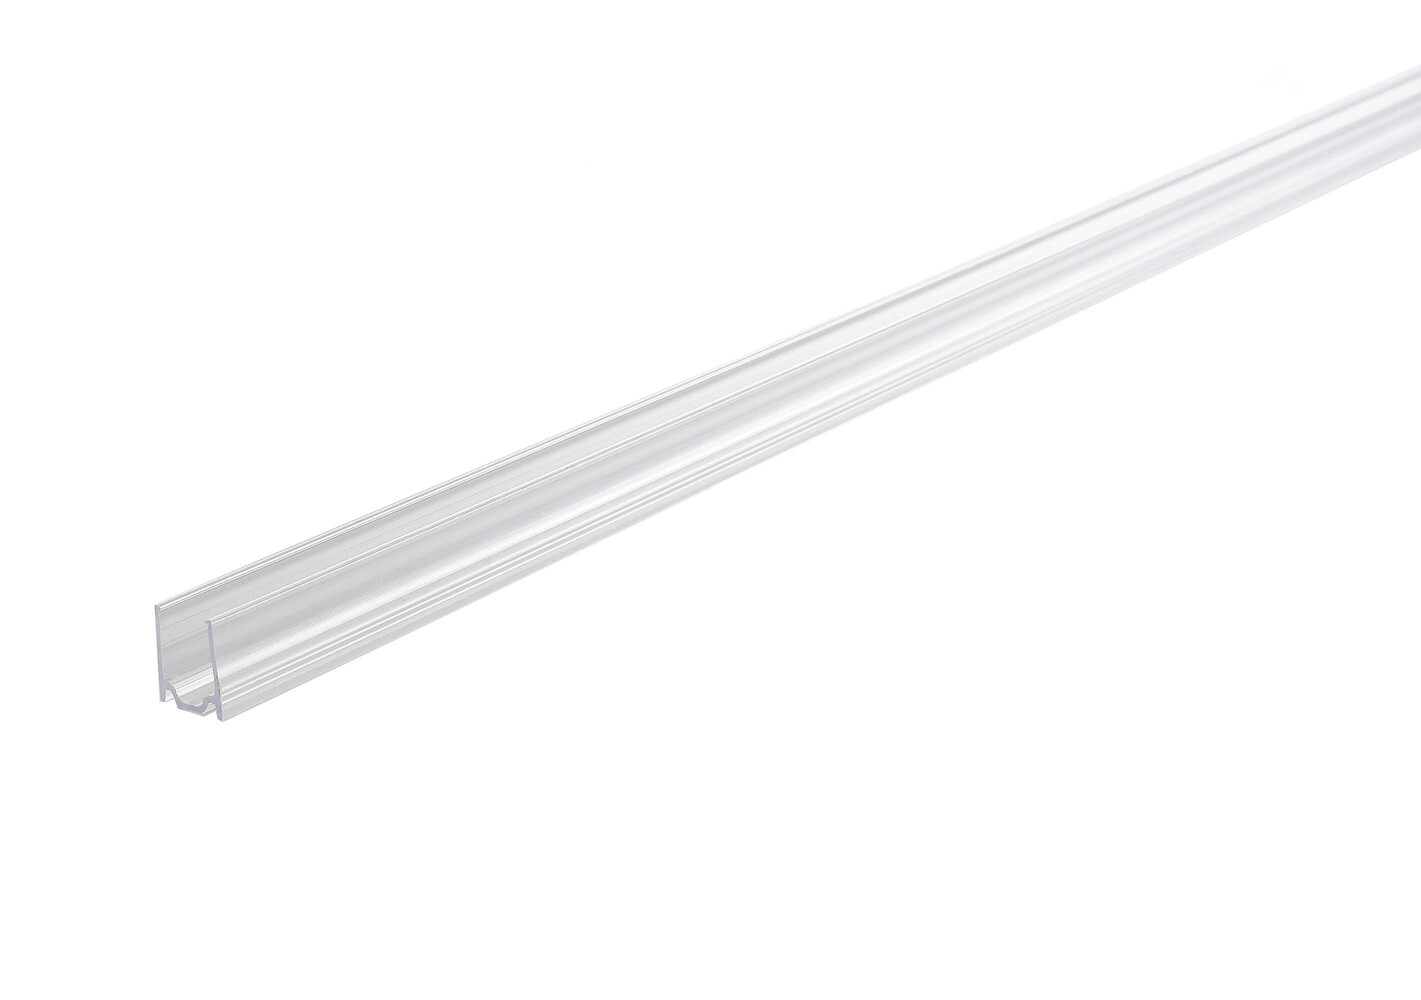 Hochwertiges LED Profil von der Marke Deko-Light, Länge 1000 mm, Breite 12 mm, Höhe 13 mm